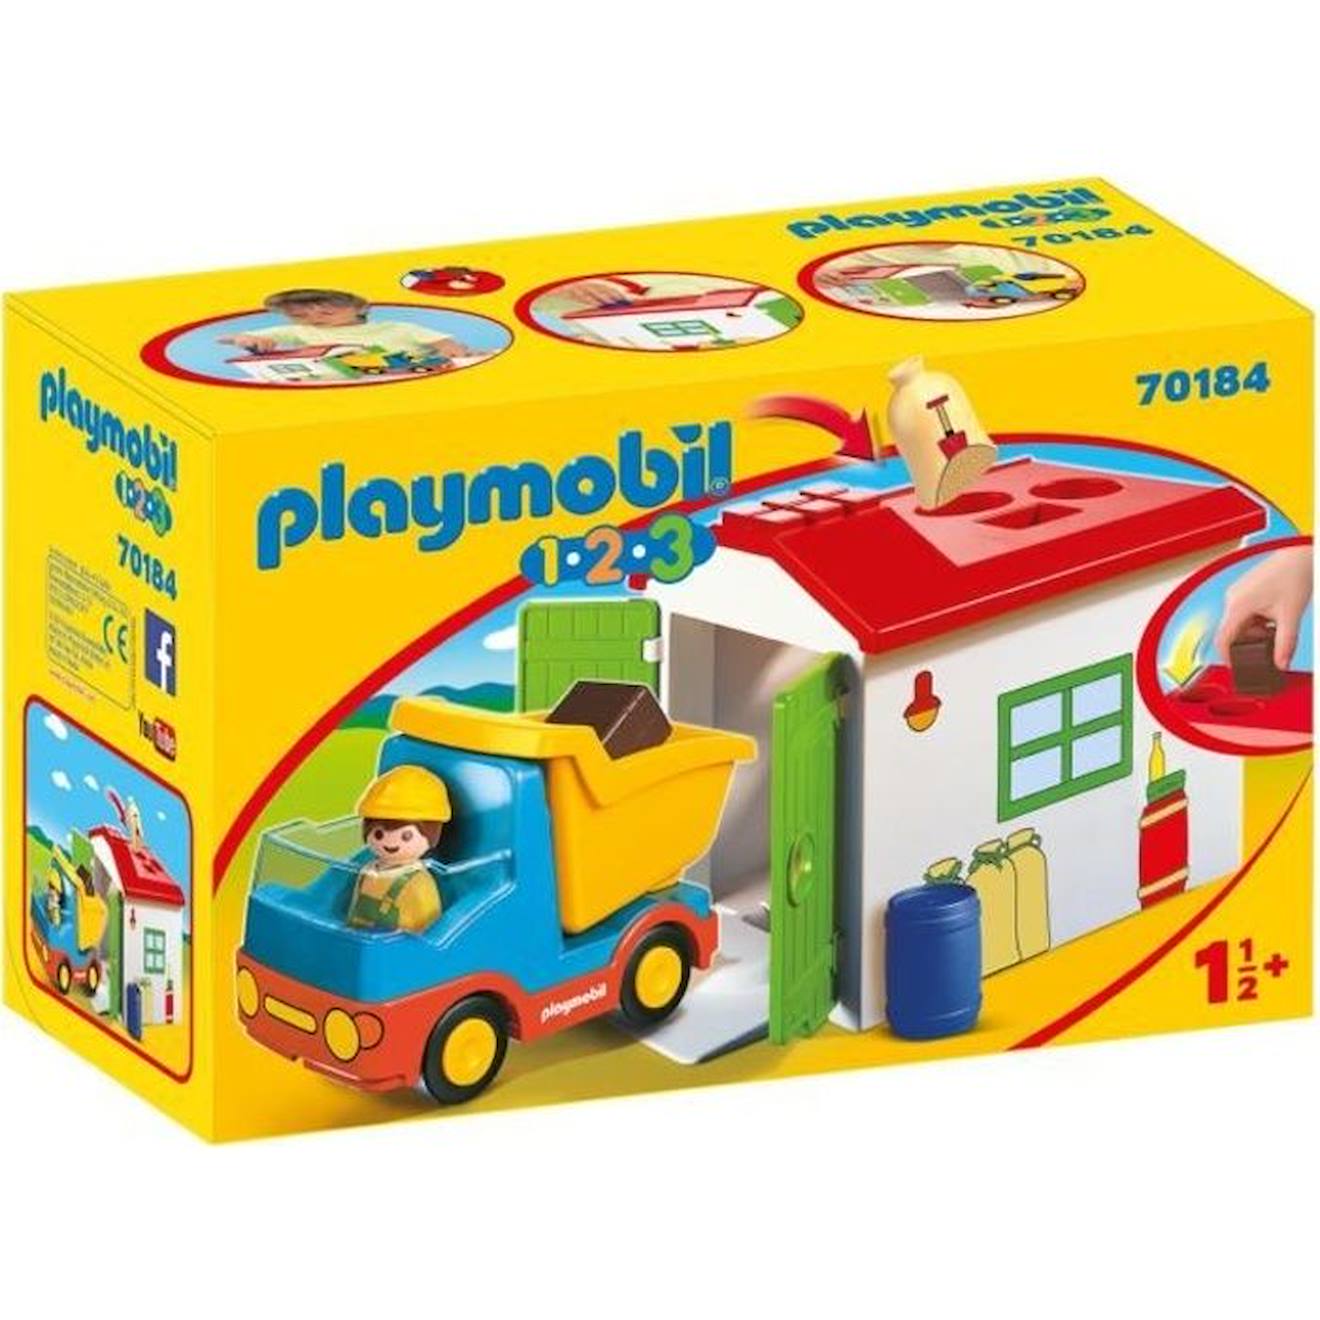 Playmobil - 70184 - Playmobil 1.2.3 - Ouvrier Avec Camion Et Garage - Matériaux Mixtes - Enfant - Mu